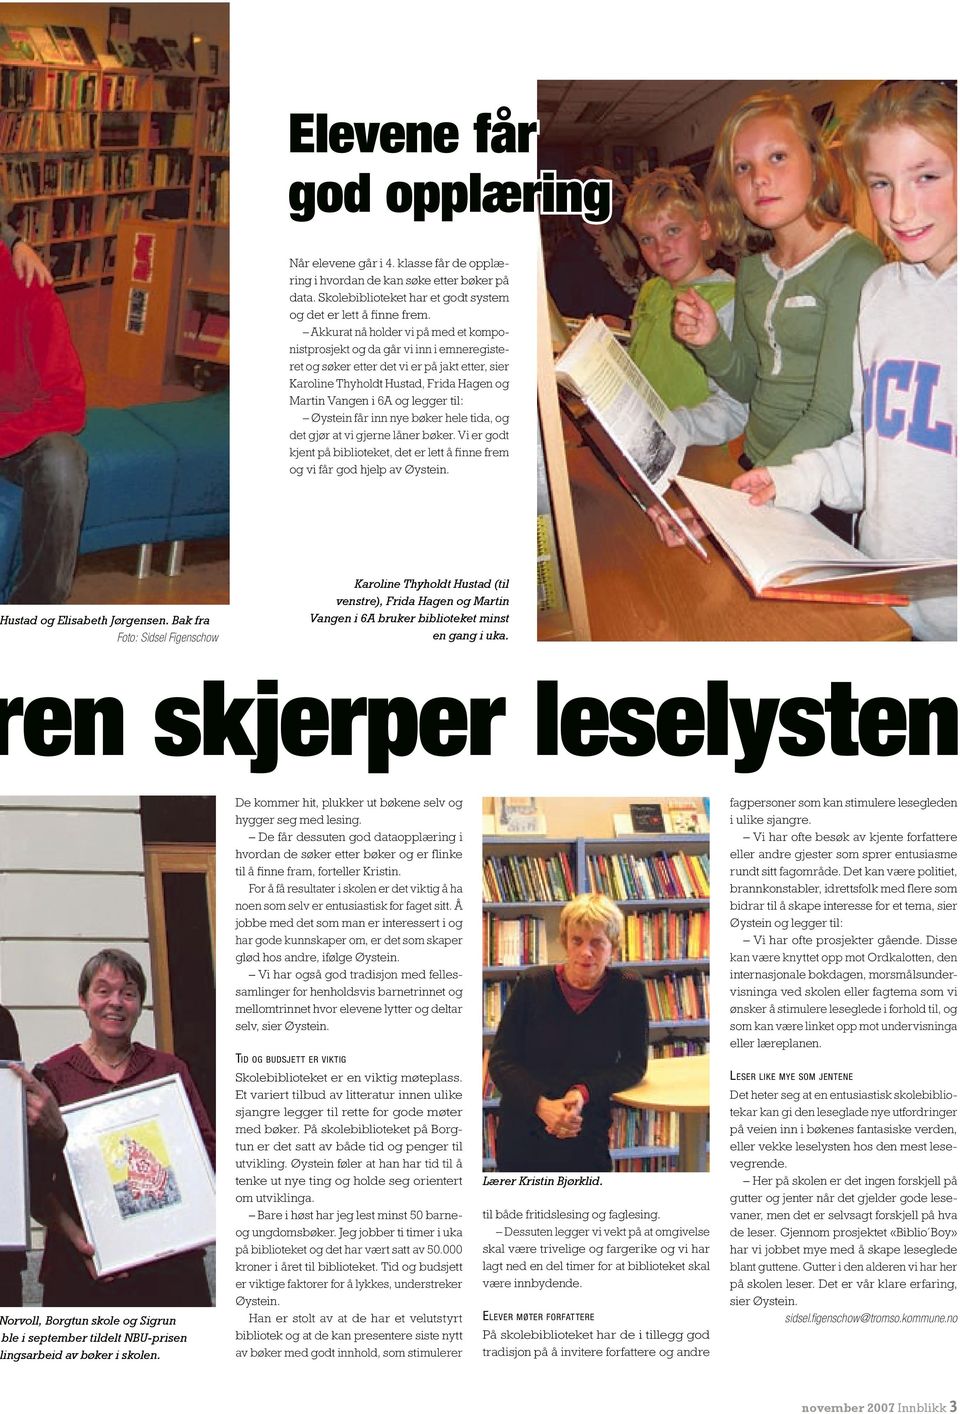 til: Øystein får inn nye bøker hele tida, og det gjør at vi gjerne låner bøker. Vi er godt kjent på biblioteket, det er lett å finne frem og vi får god hjelp av Øystein. ustad og Elisabeth Jørgensen.